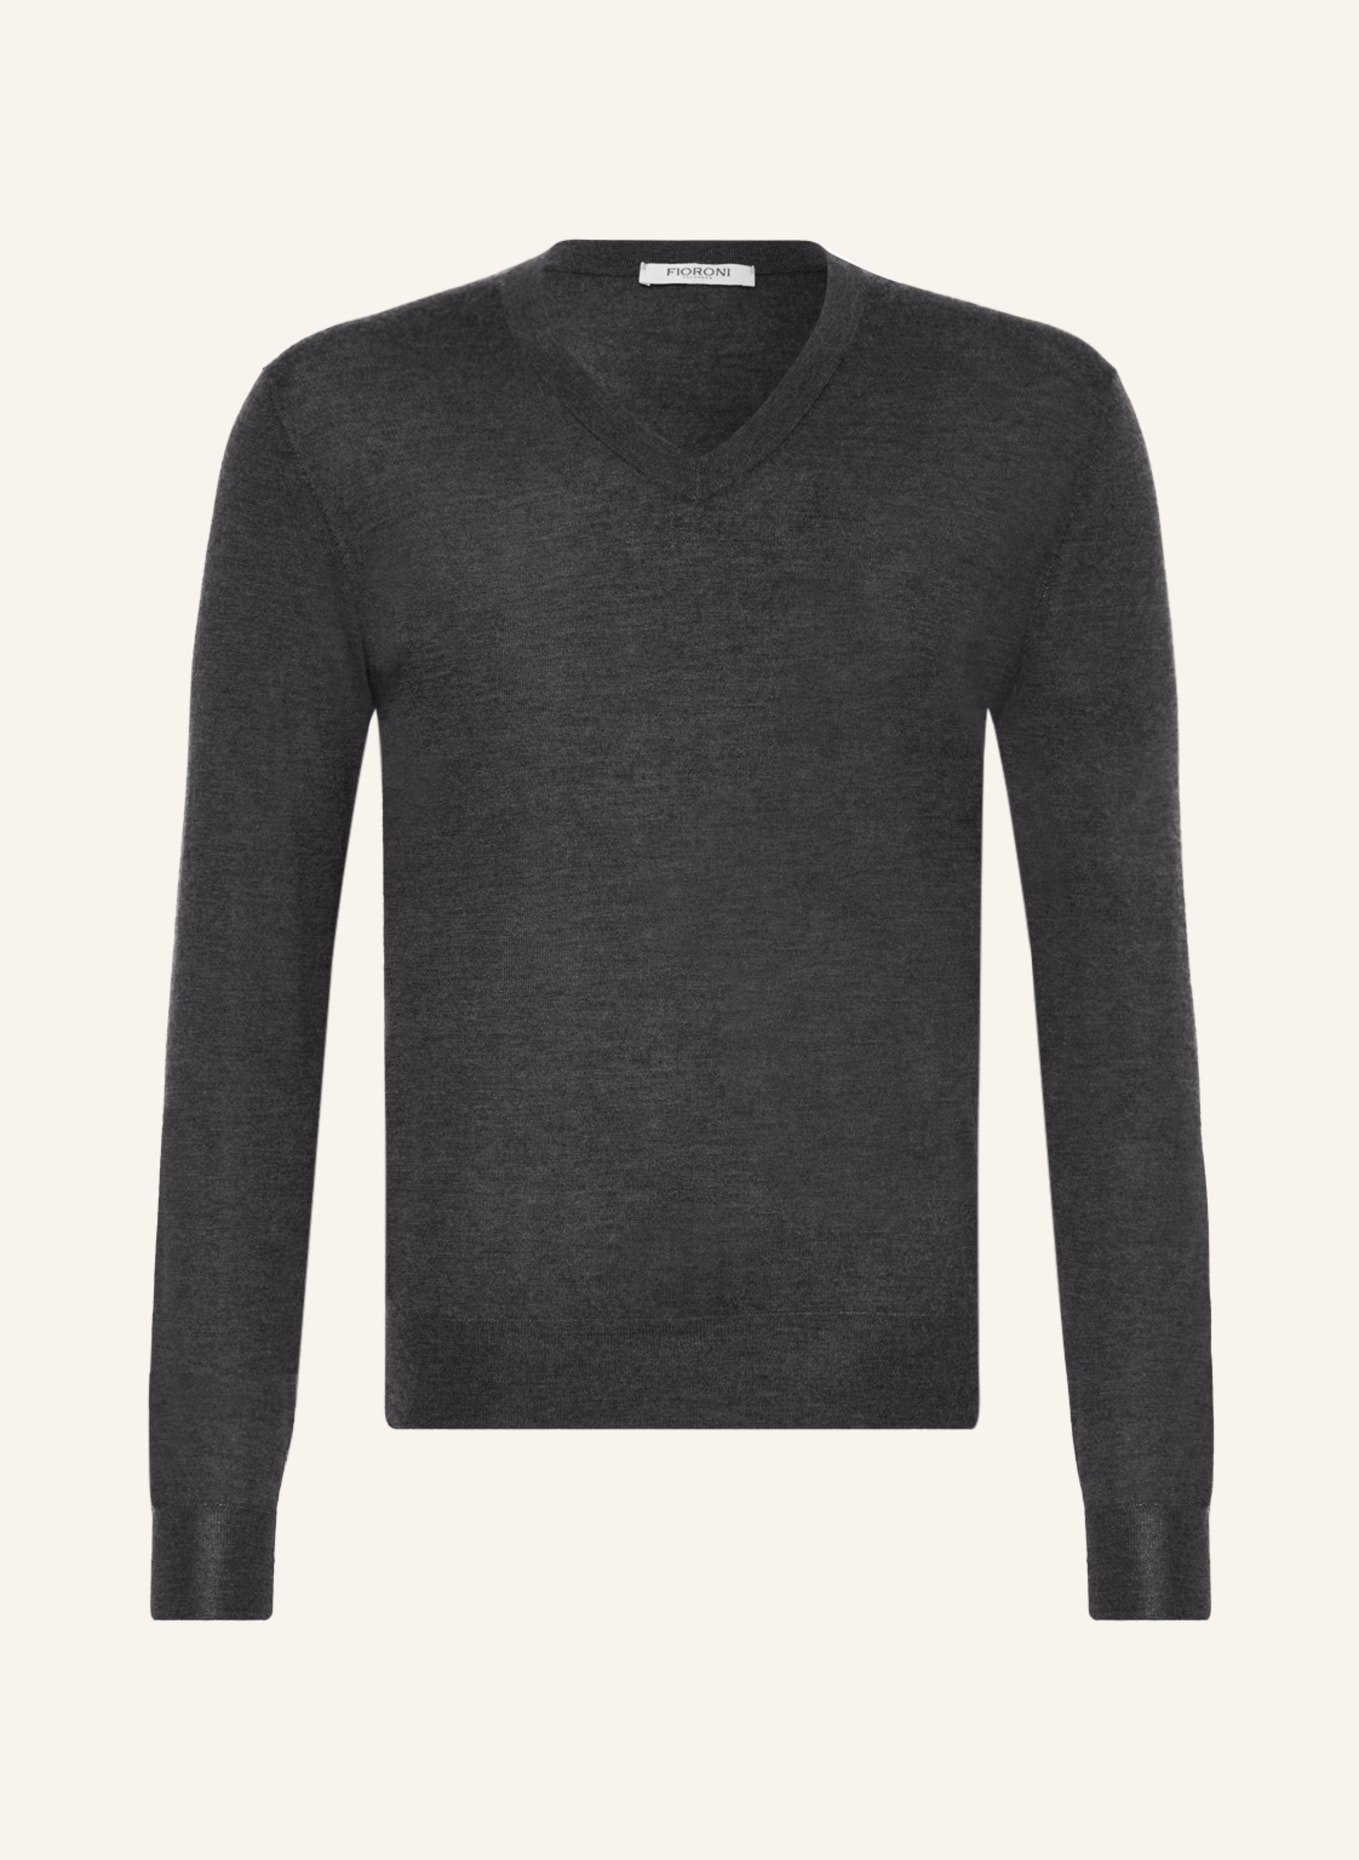 FIORONI Cashmere sweater, Color: DARK GRAY (Image 1)